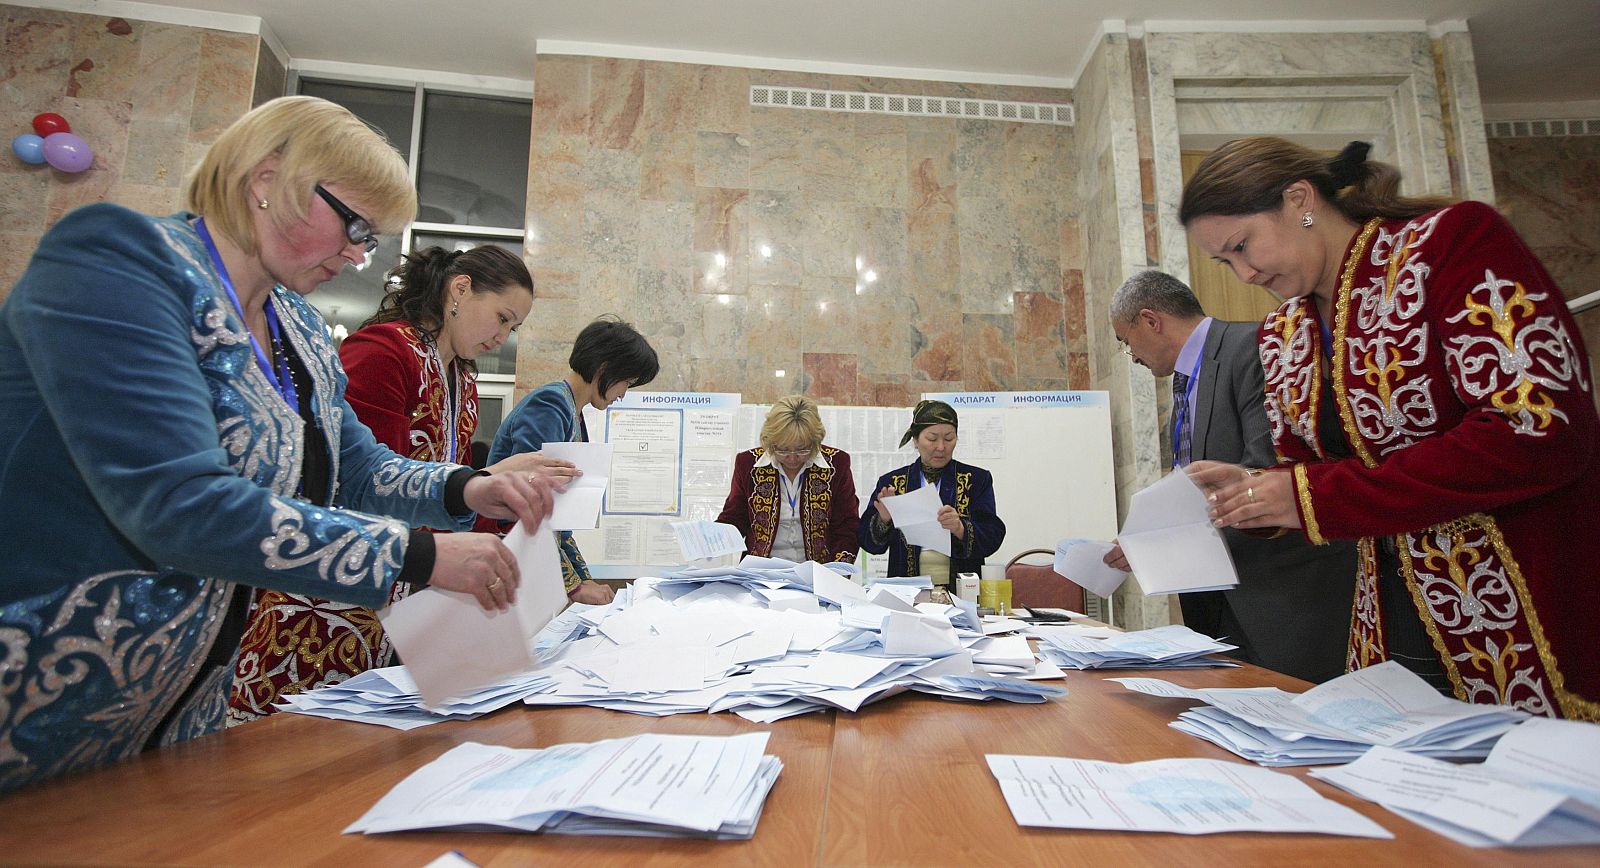 Recuento de votos en las elecciones presidenciales de Kazajistán